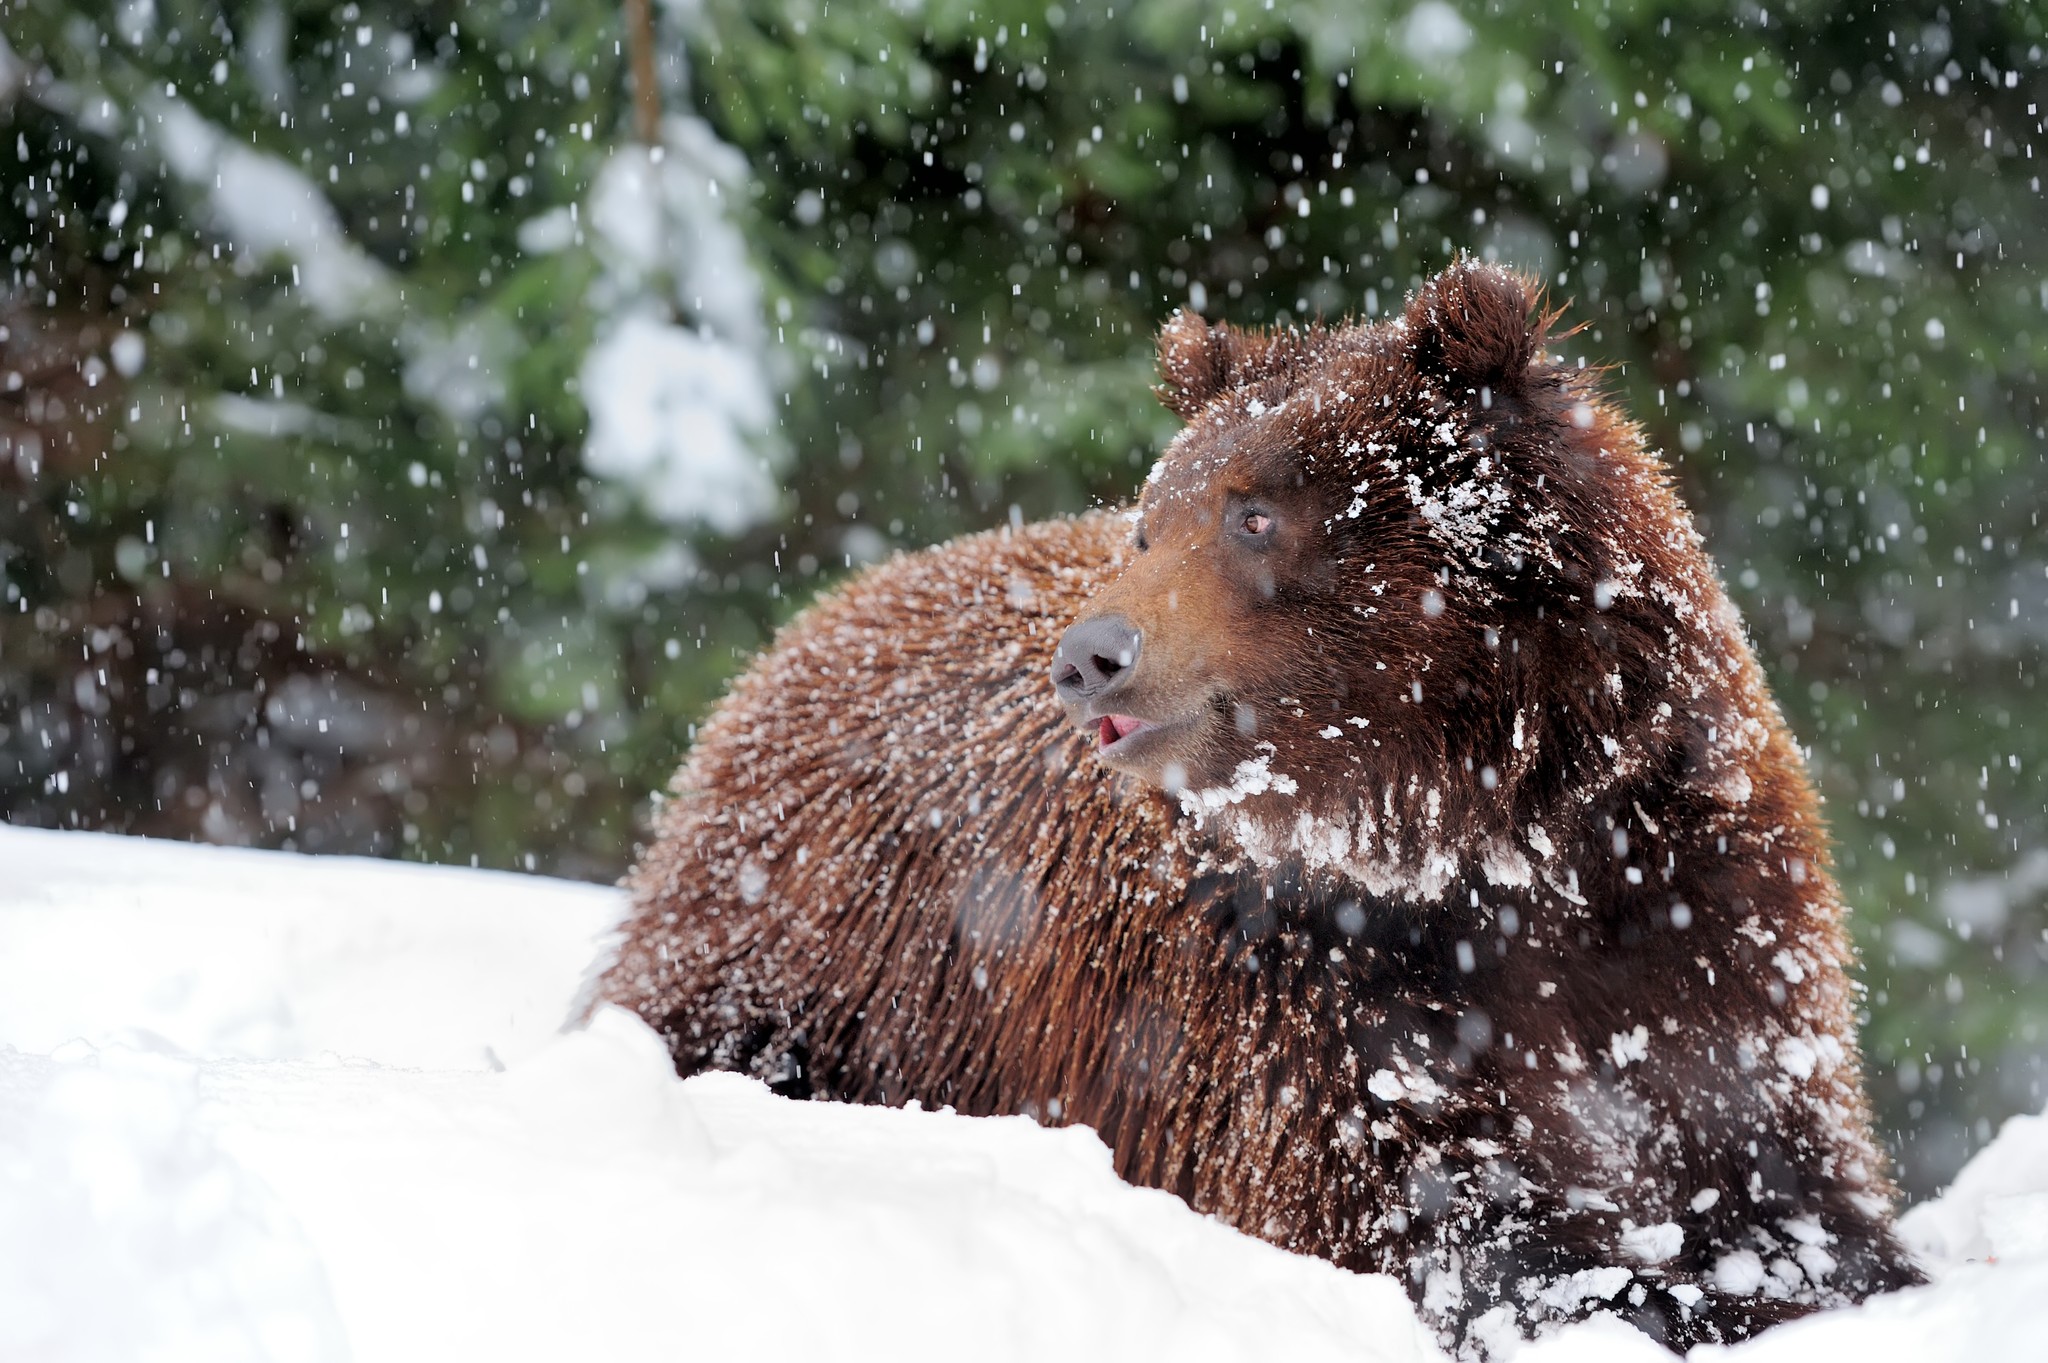 Із 30 ведмедів в нацпарку Синевир на Закарпатті цієї зими у сплячку залягло 12 (ФОТО)